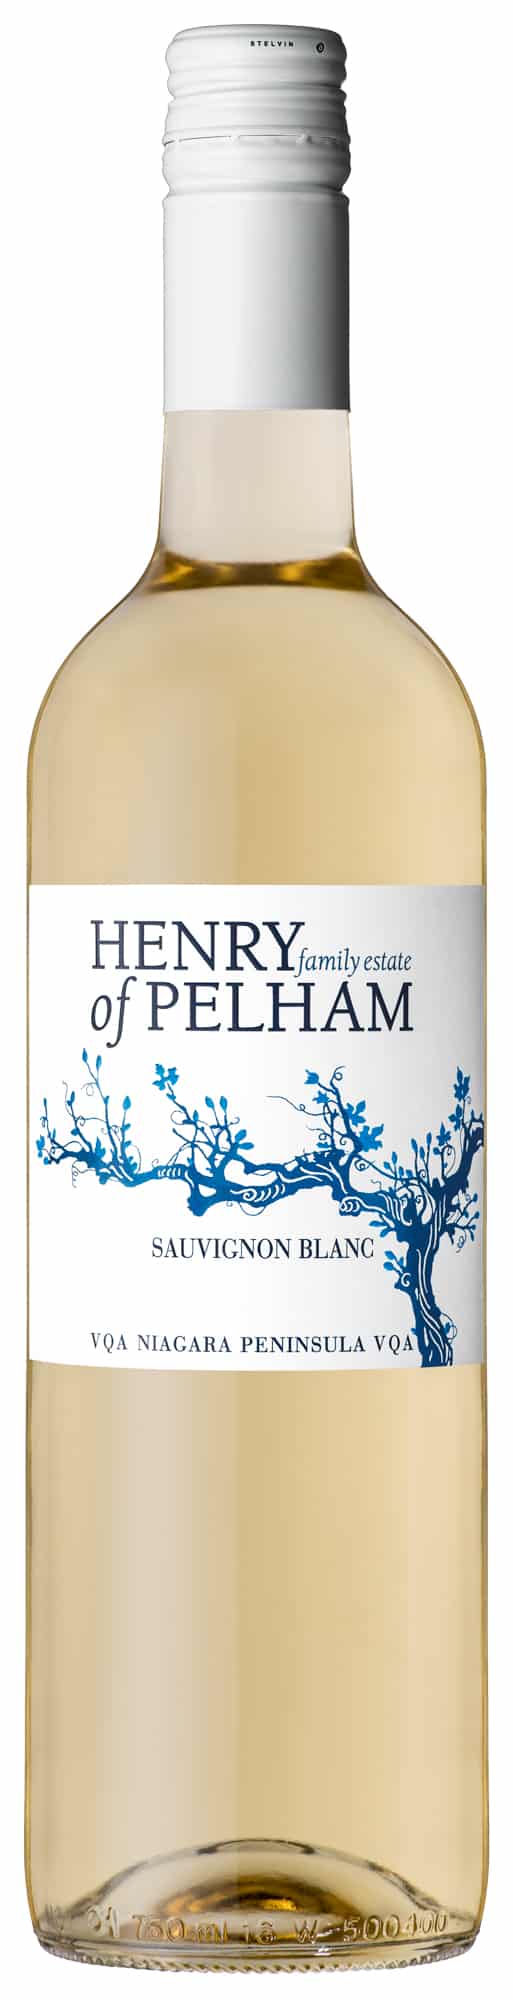 Henry of Pelham Classic Dry White Wine Sauvignon Blanc 